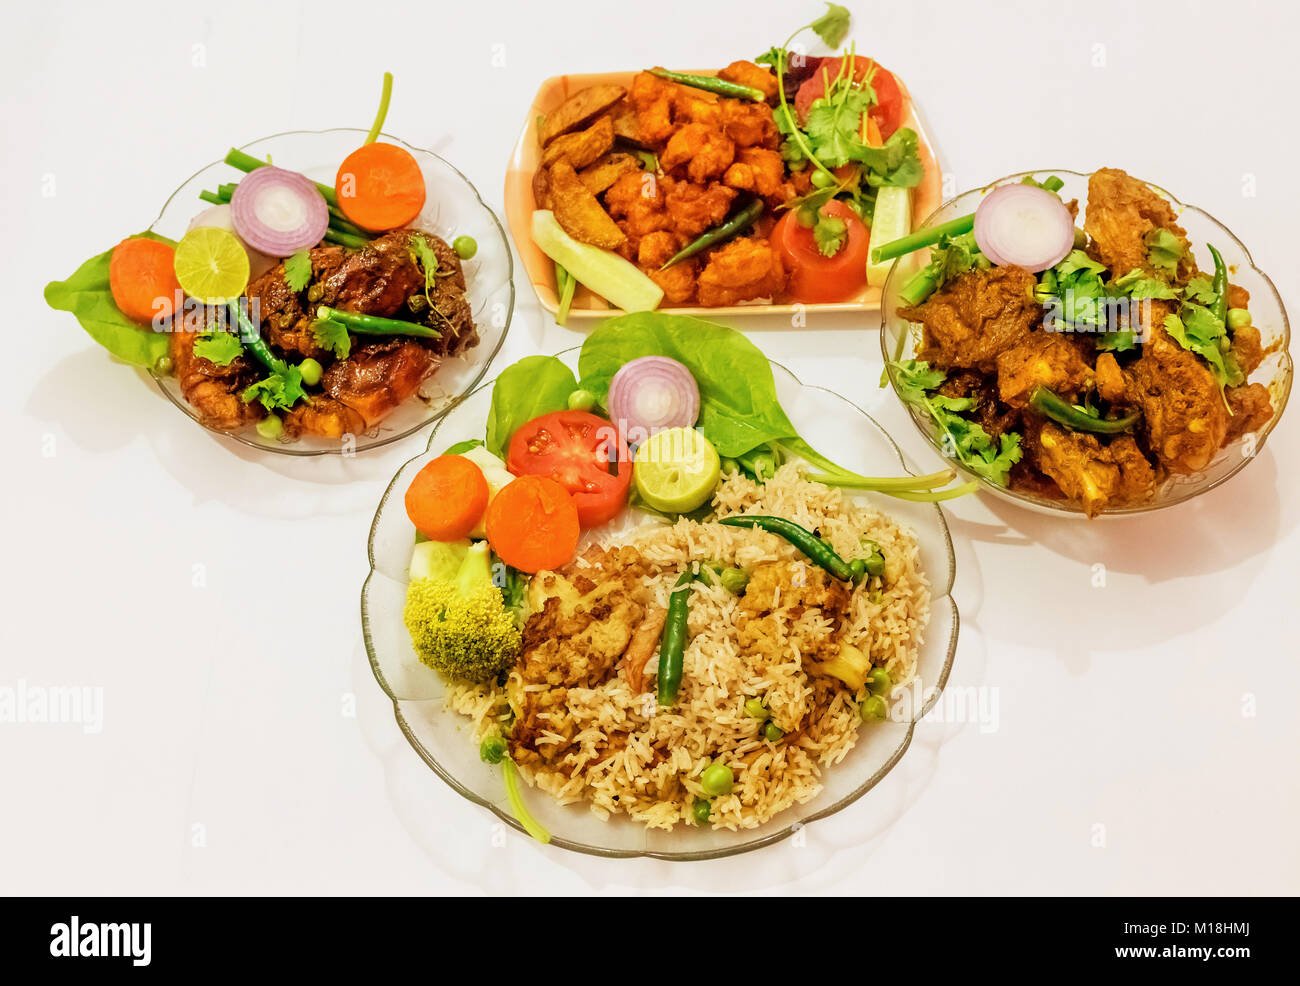 Scharfe Indische nicht-vegetarische Lebensmittel aus der gebratenen Reis, frittierte würzige Garnelen, Huhn ohne Knochen Braten und Huhn pakora. Stockfoto